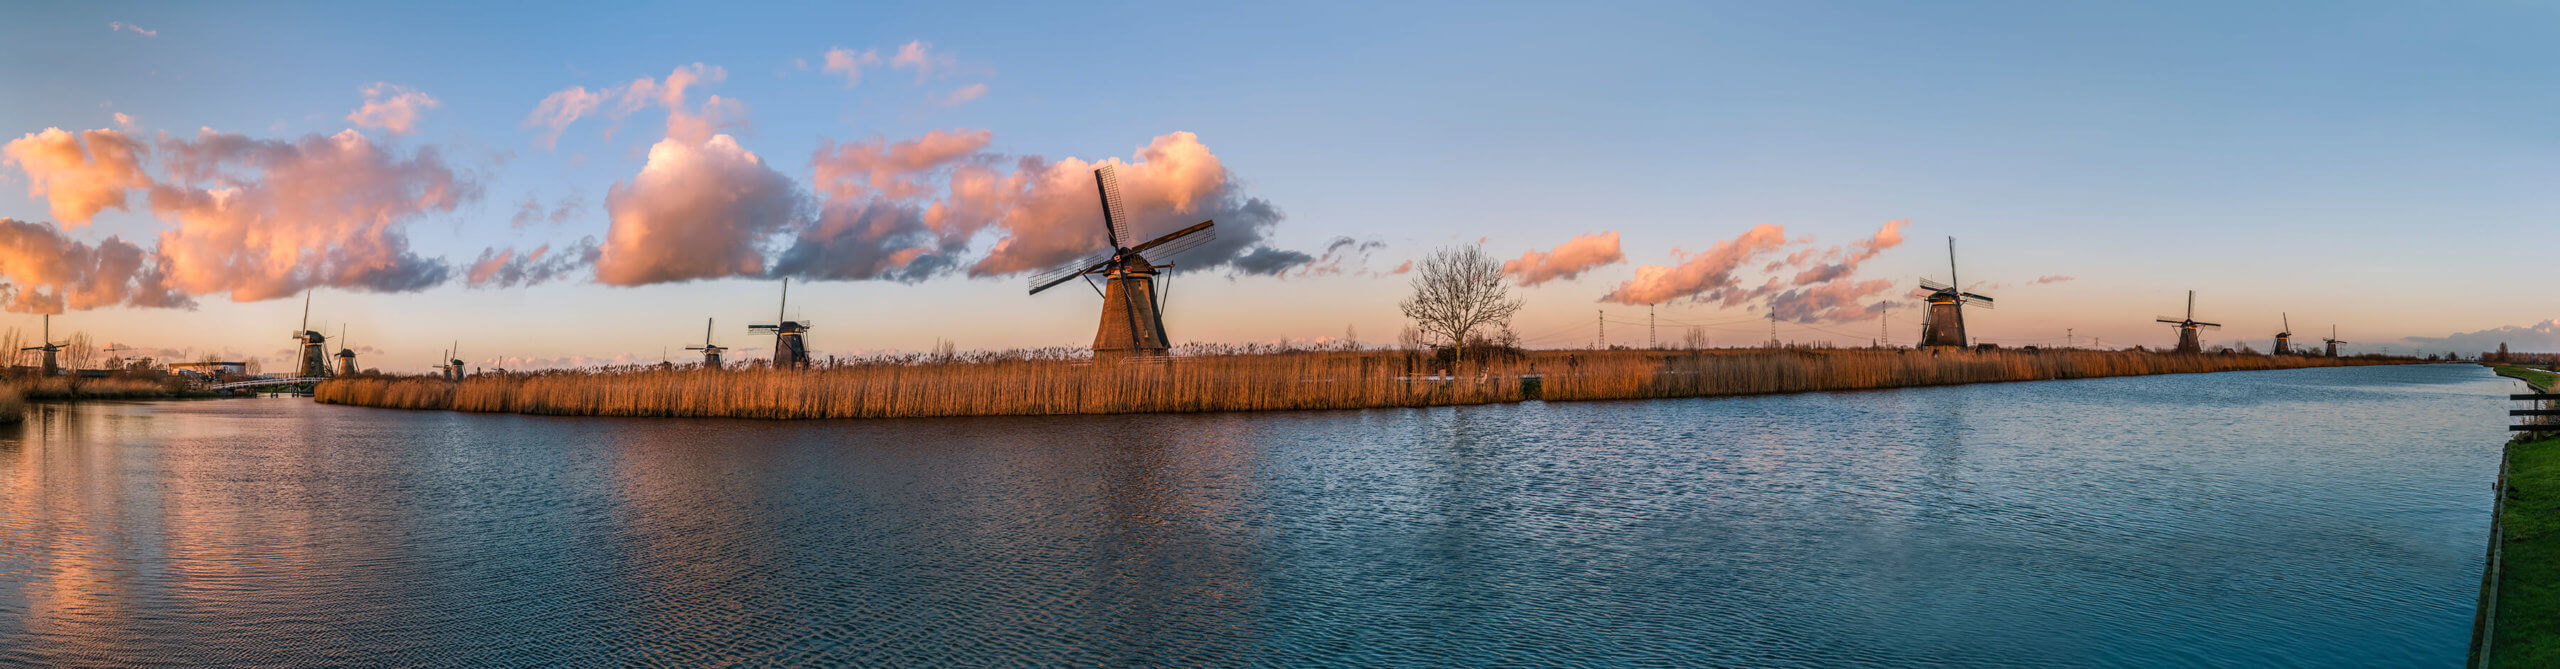 Zuid-Holland, Netherlands